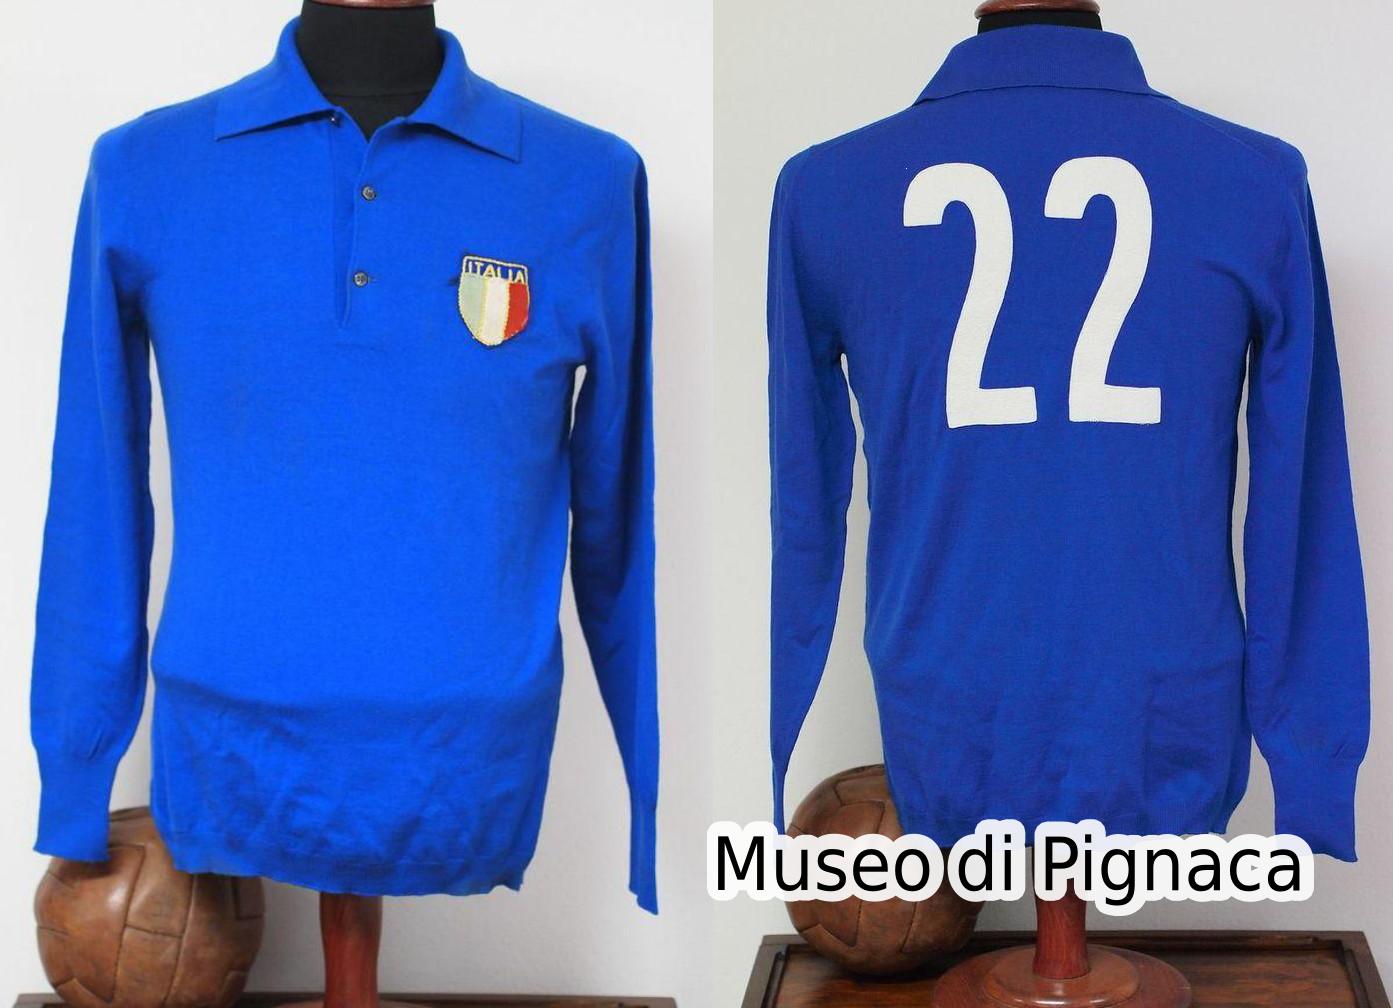 Giacomo Bulgarelli - Maglia esordio in azzurro, mondiali CILE 1962 partita vs Svizzera